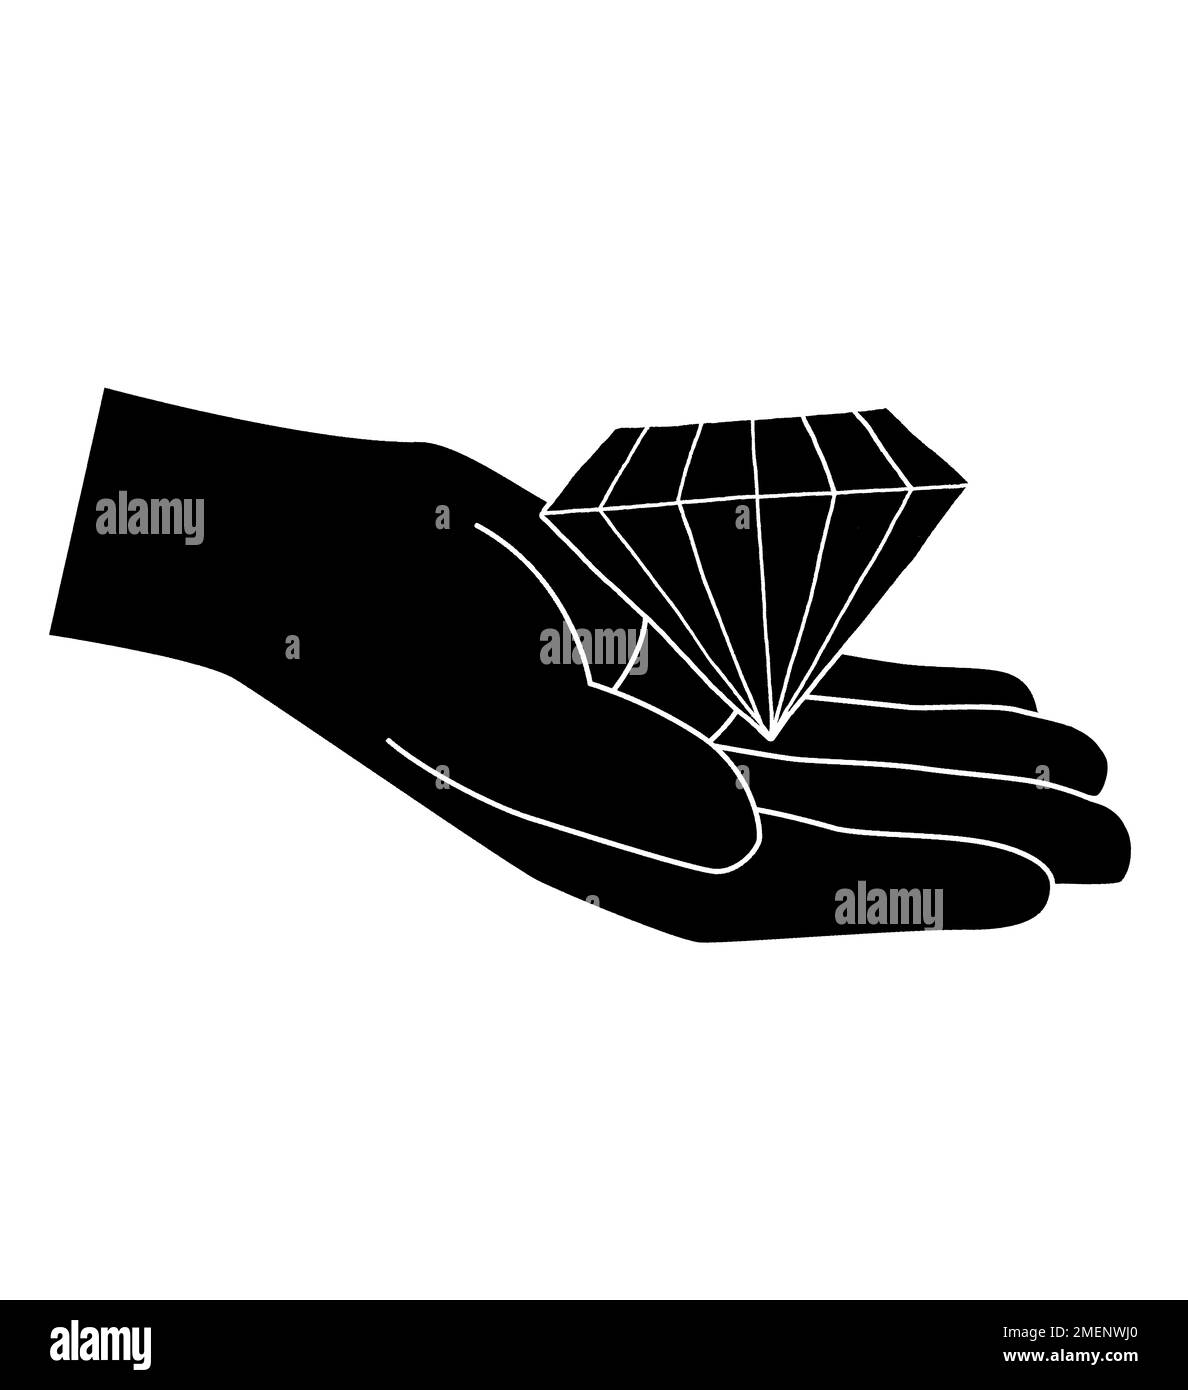 Immagine in bianco e nero del diamante seduto nel palmo della mano Foto Stock